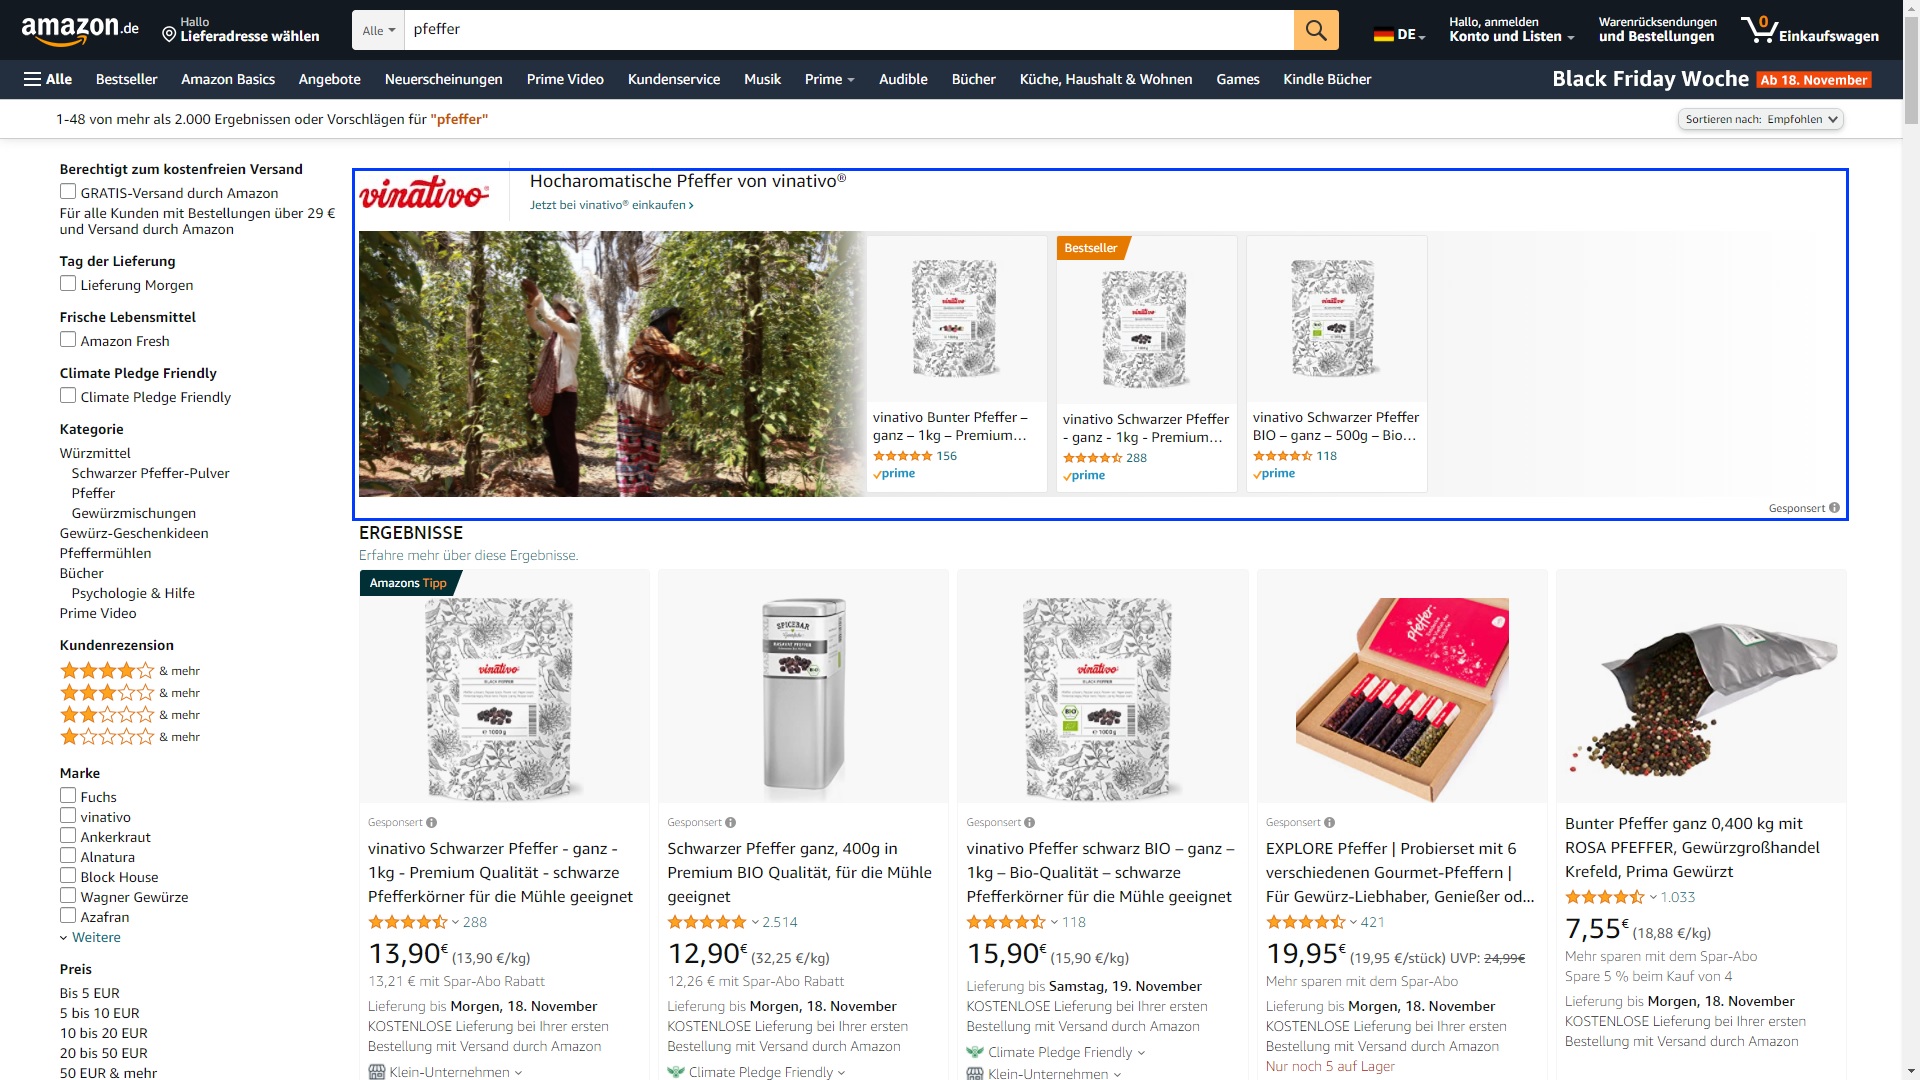 Der Screenshot zeigt eine Sponsored Brands-Kampagne auf Amazon, die einen Themenfokus auf das Keyword Pfeffer hat.